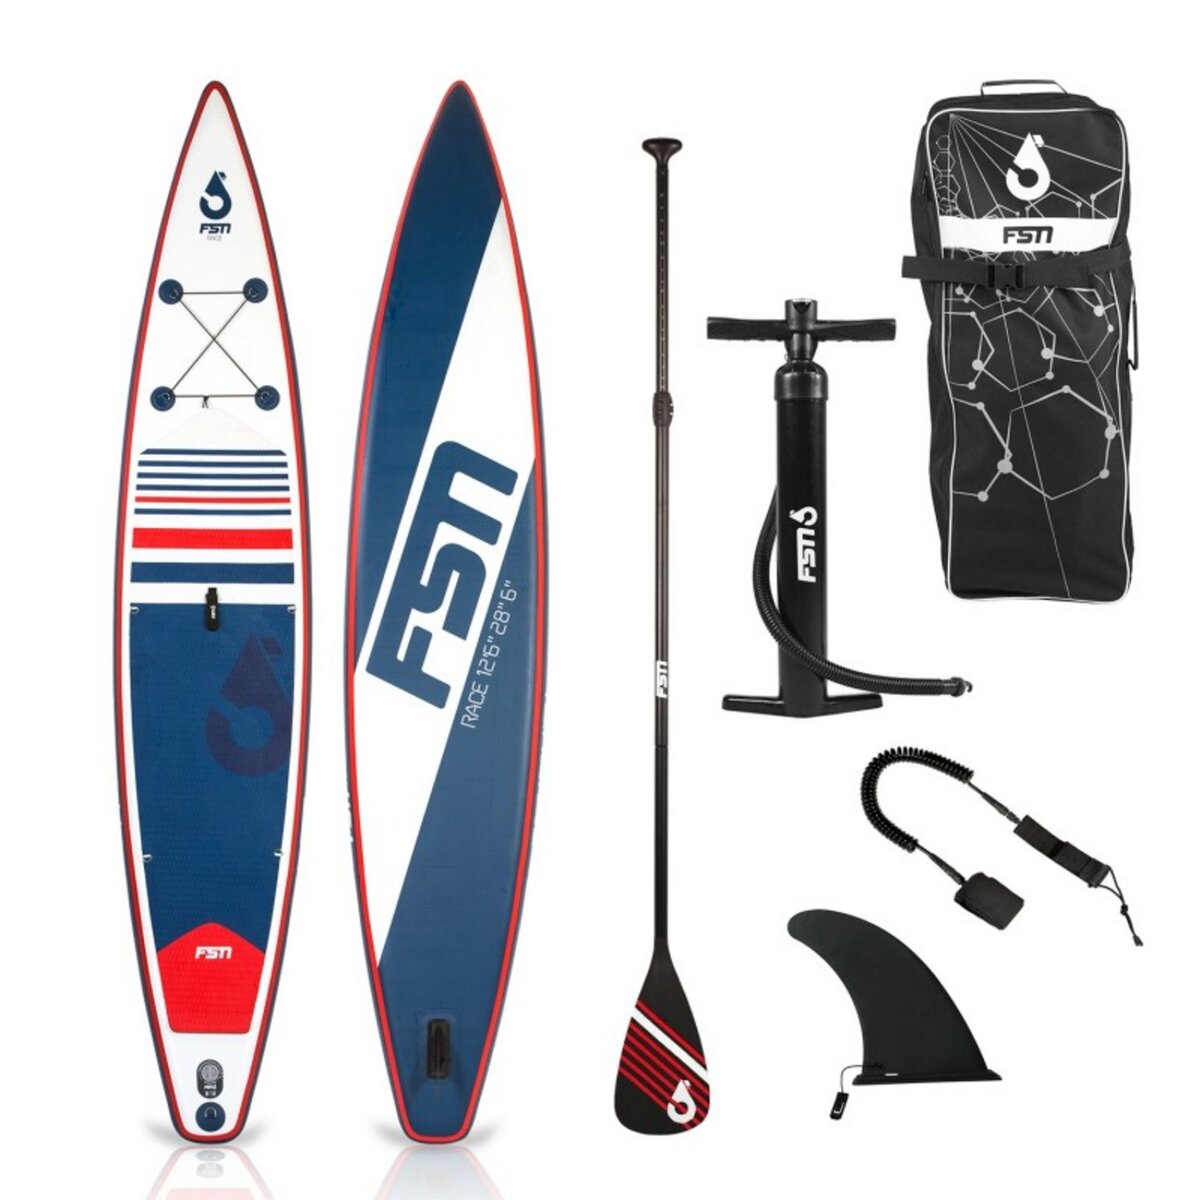 FUSION Paddle gonflable RACE 12'6 - 384 x 71 x 15 cm - Stand up paddle avec pagaie, leash, pompe, anneaux de kayak et sac de transport